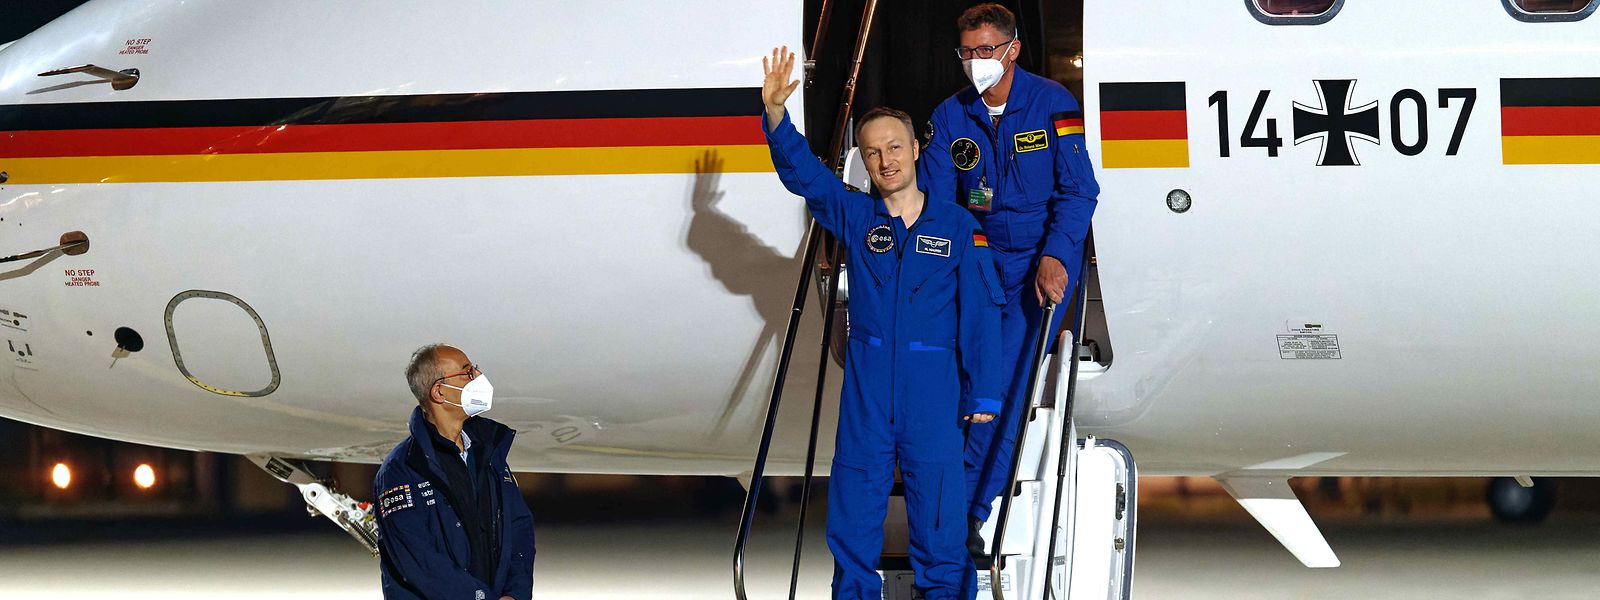 Maurer bei seiner Ankunft in Köln: Der 52-jährige Saarländer hatte rund ein halbes Jahr an Bord der Internationalen Raumstation ISS verbracht und war am Freitagmorgen mit einer Raumkapsel zur Erde zurückgekehrt.